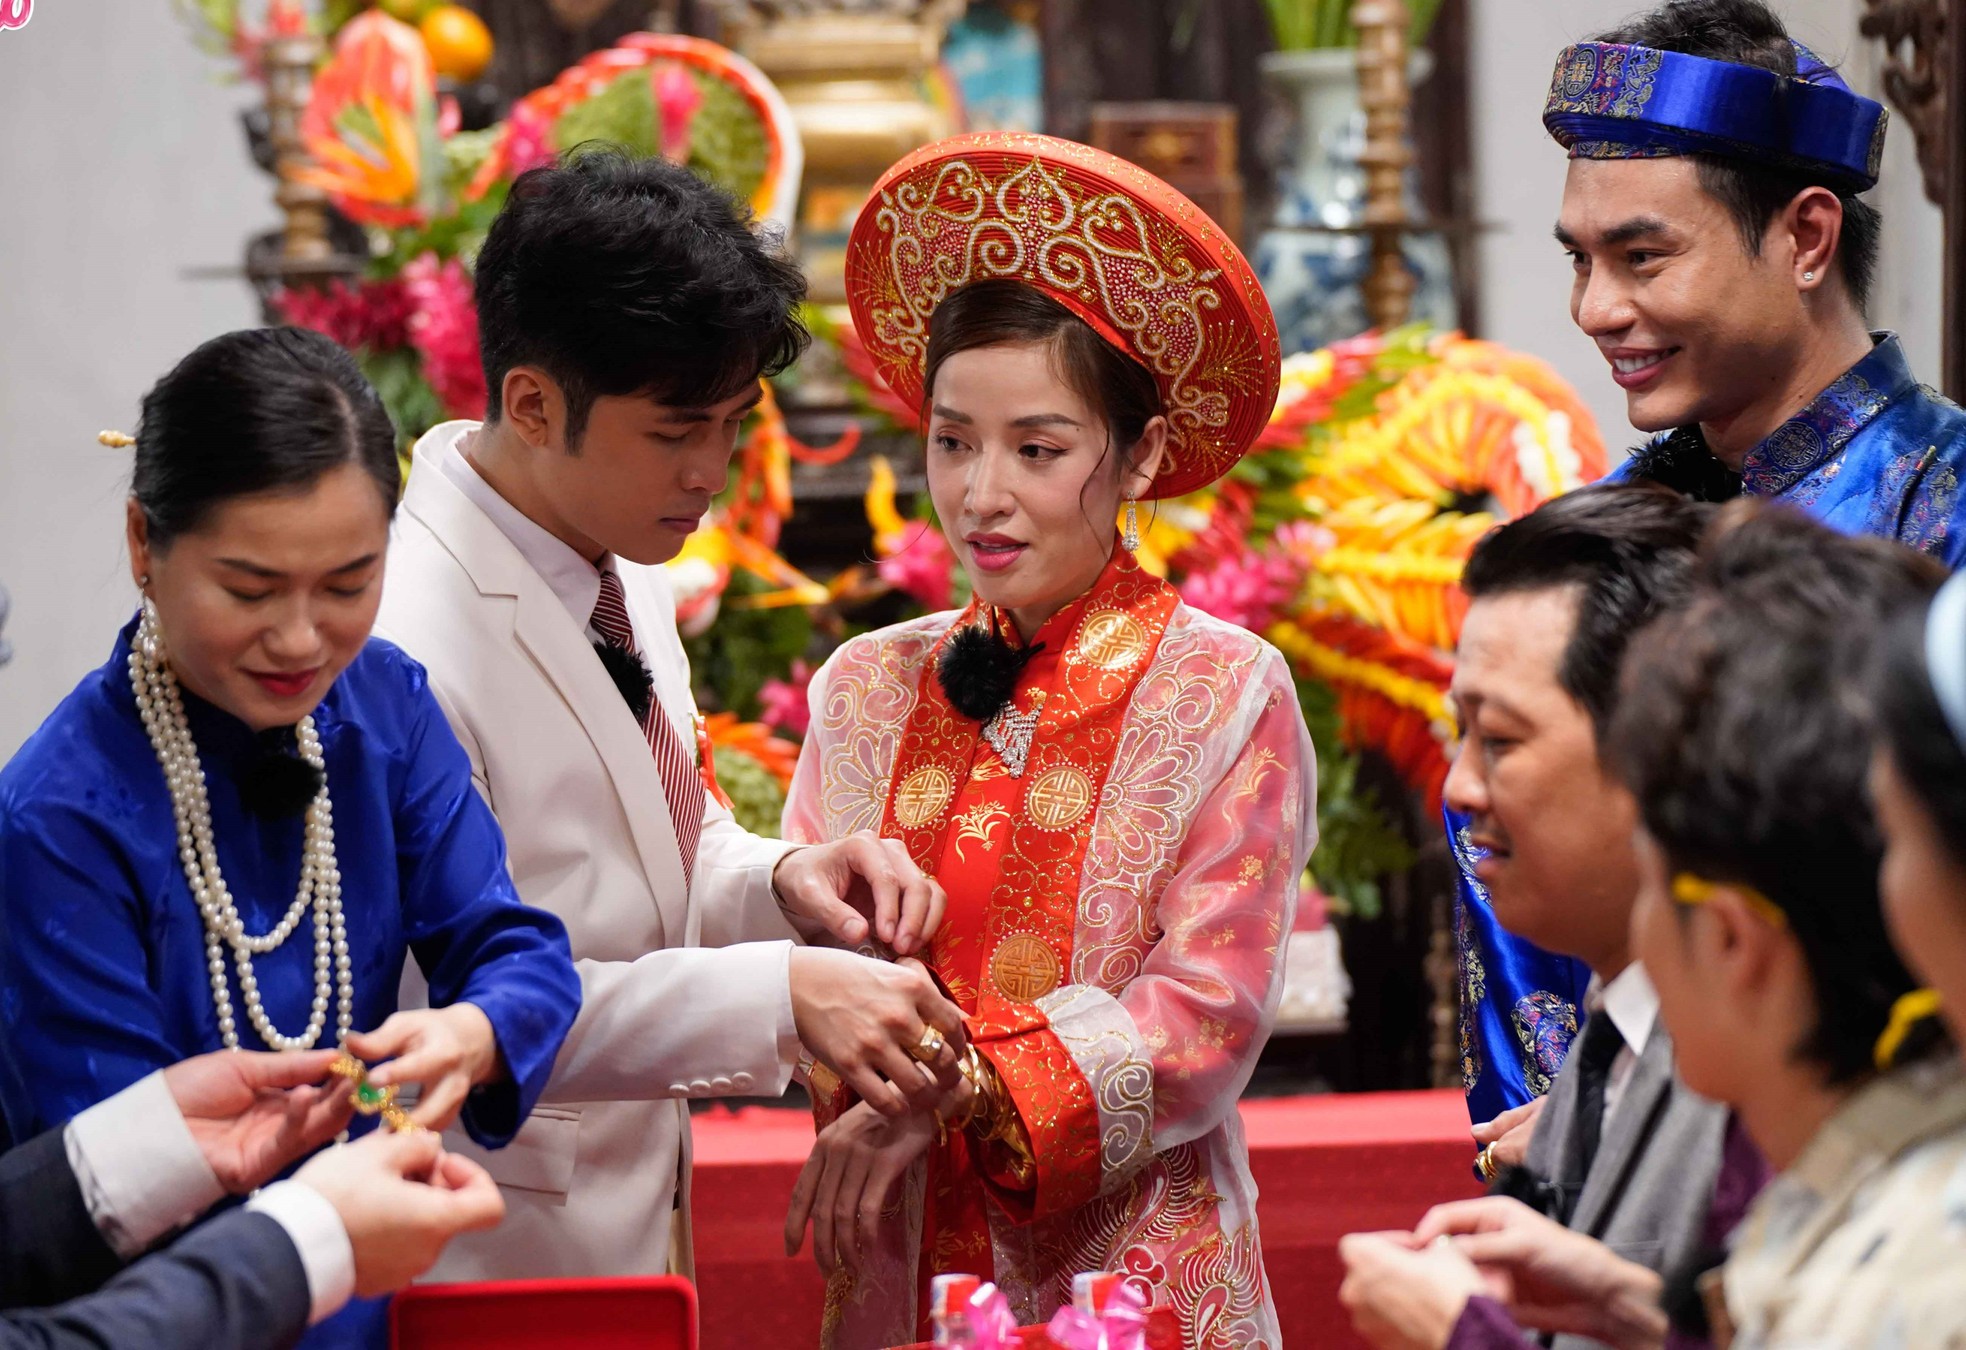 Puka - Gin Tuấn Kiệt tiết lộ bố mẹ bị sang chấn tâm lý, họ hàng chất vấn sau lễ cưới trên truyền hình - Ảnh 5.